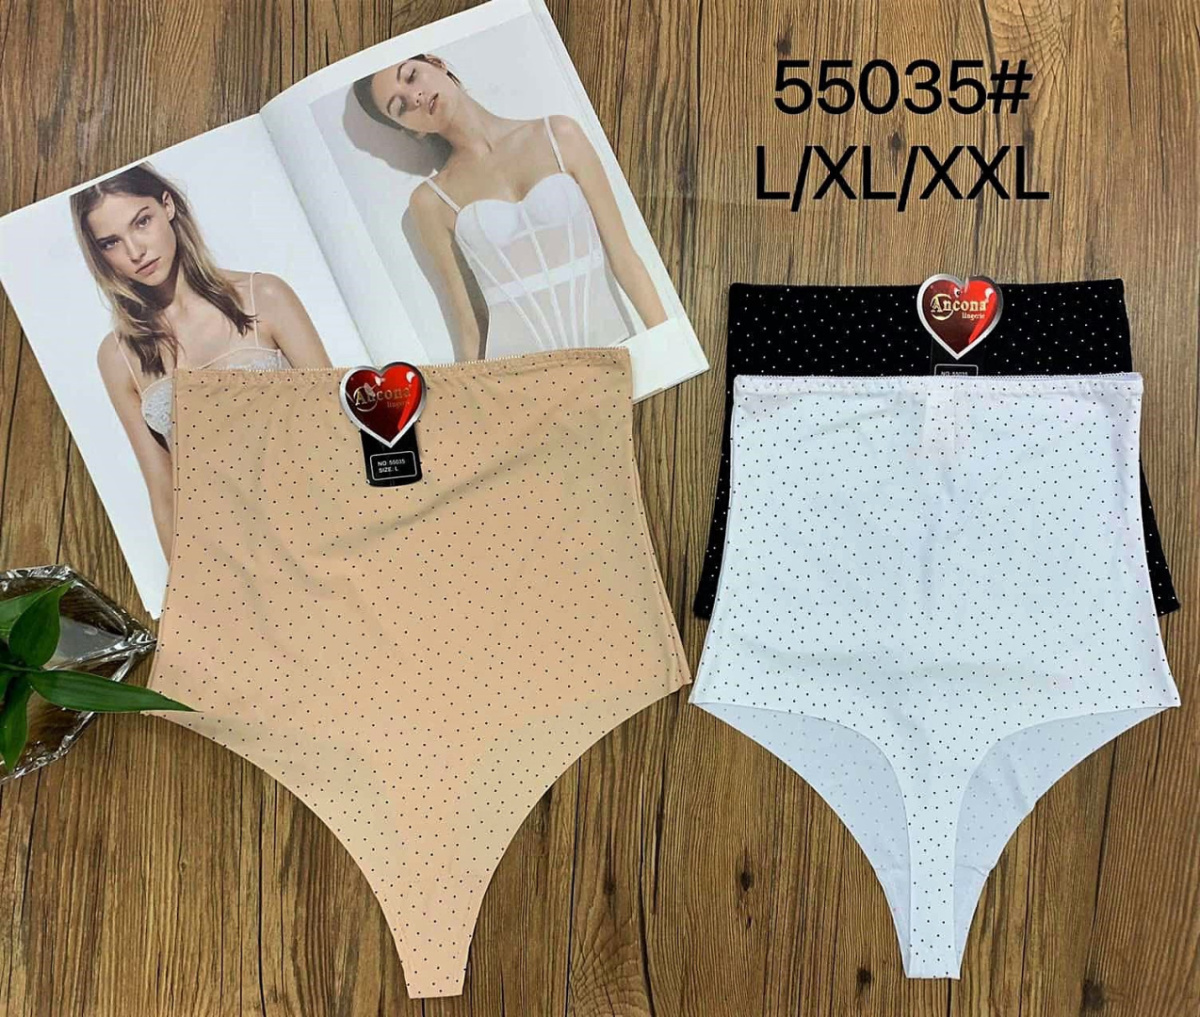 Women's panties size L, XL, XXL